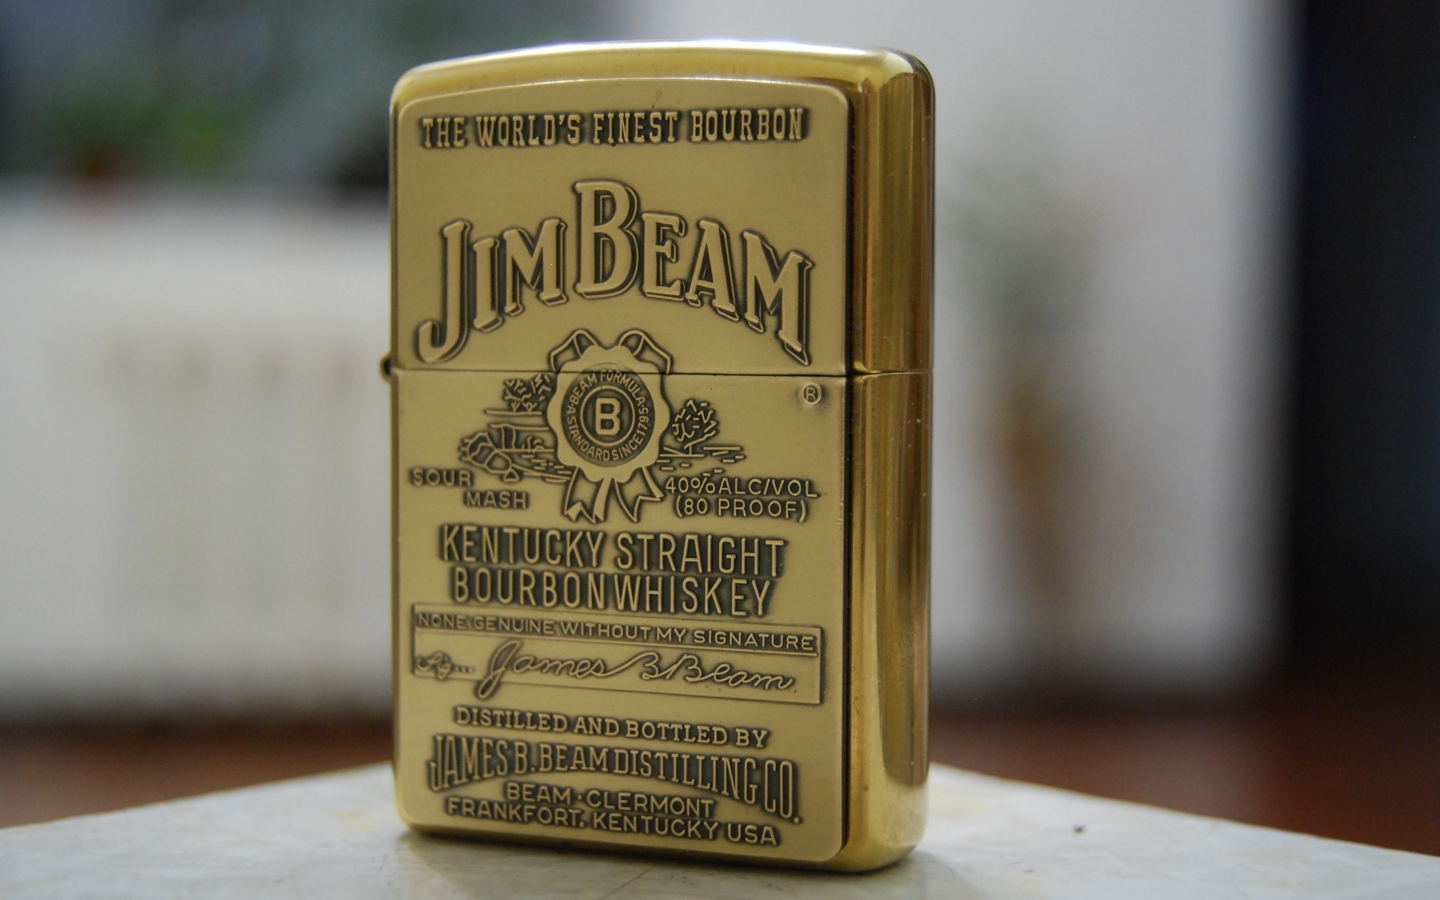 Jim Beam Zippo Lighter for 1440 x 900 widescreen resolution